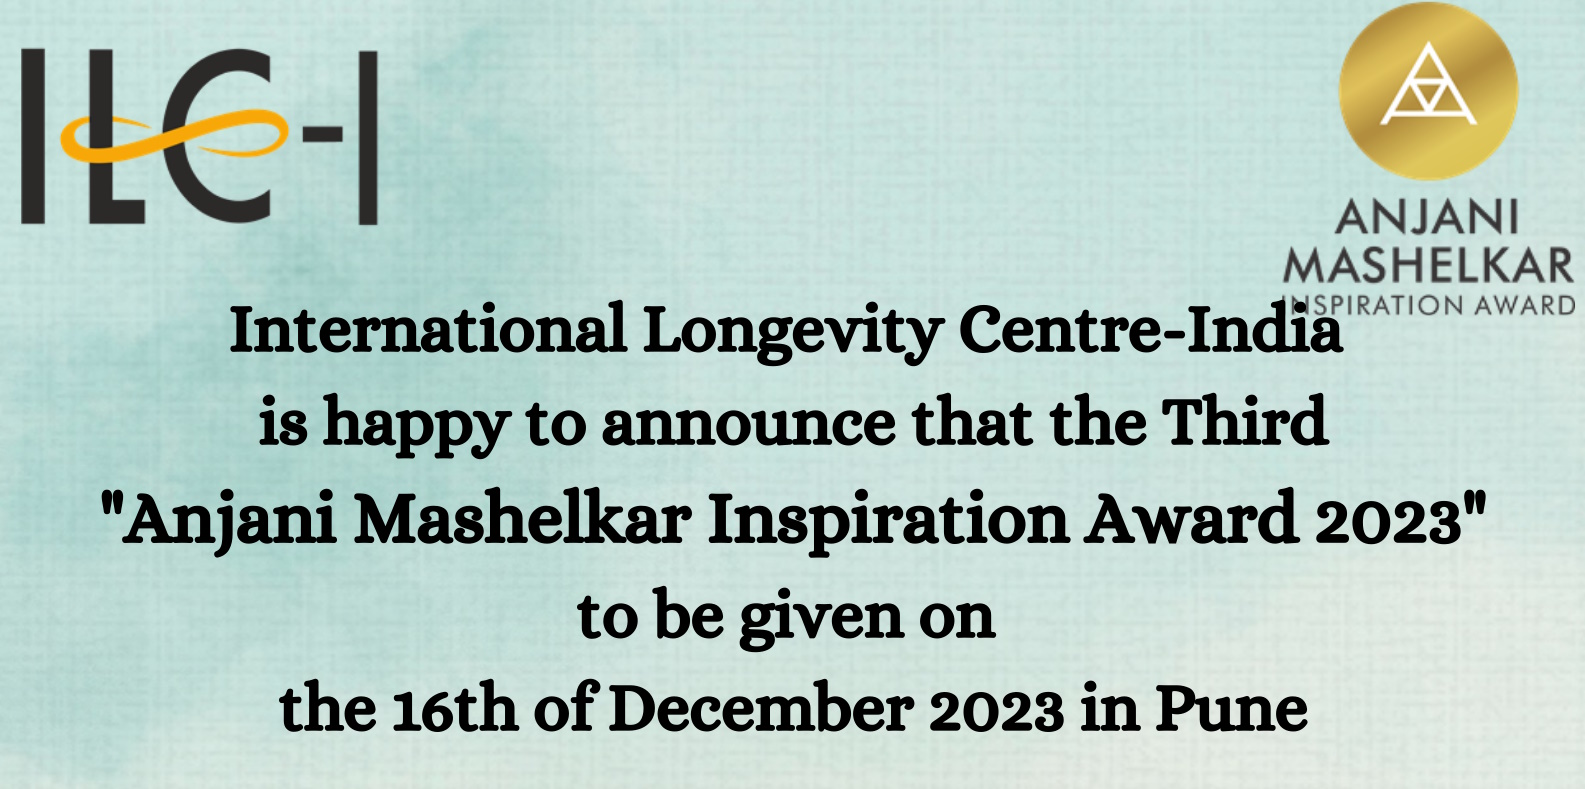 Anjani Mashelkar Inspiration Award 2023